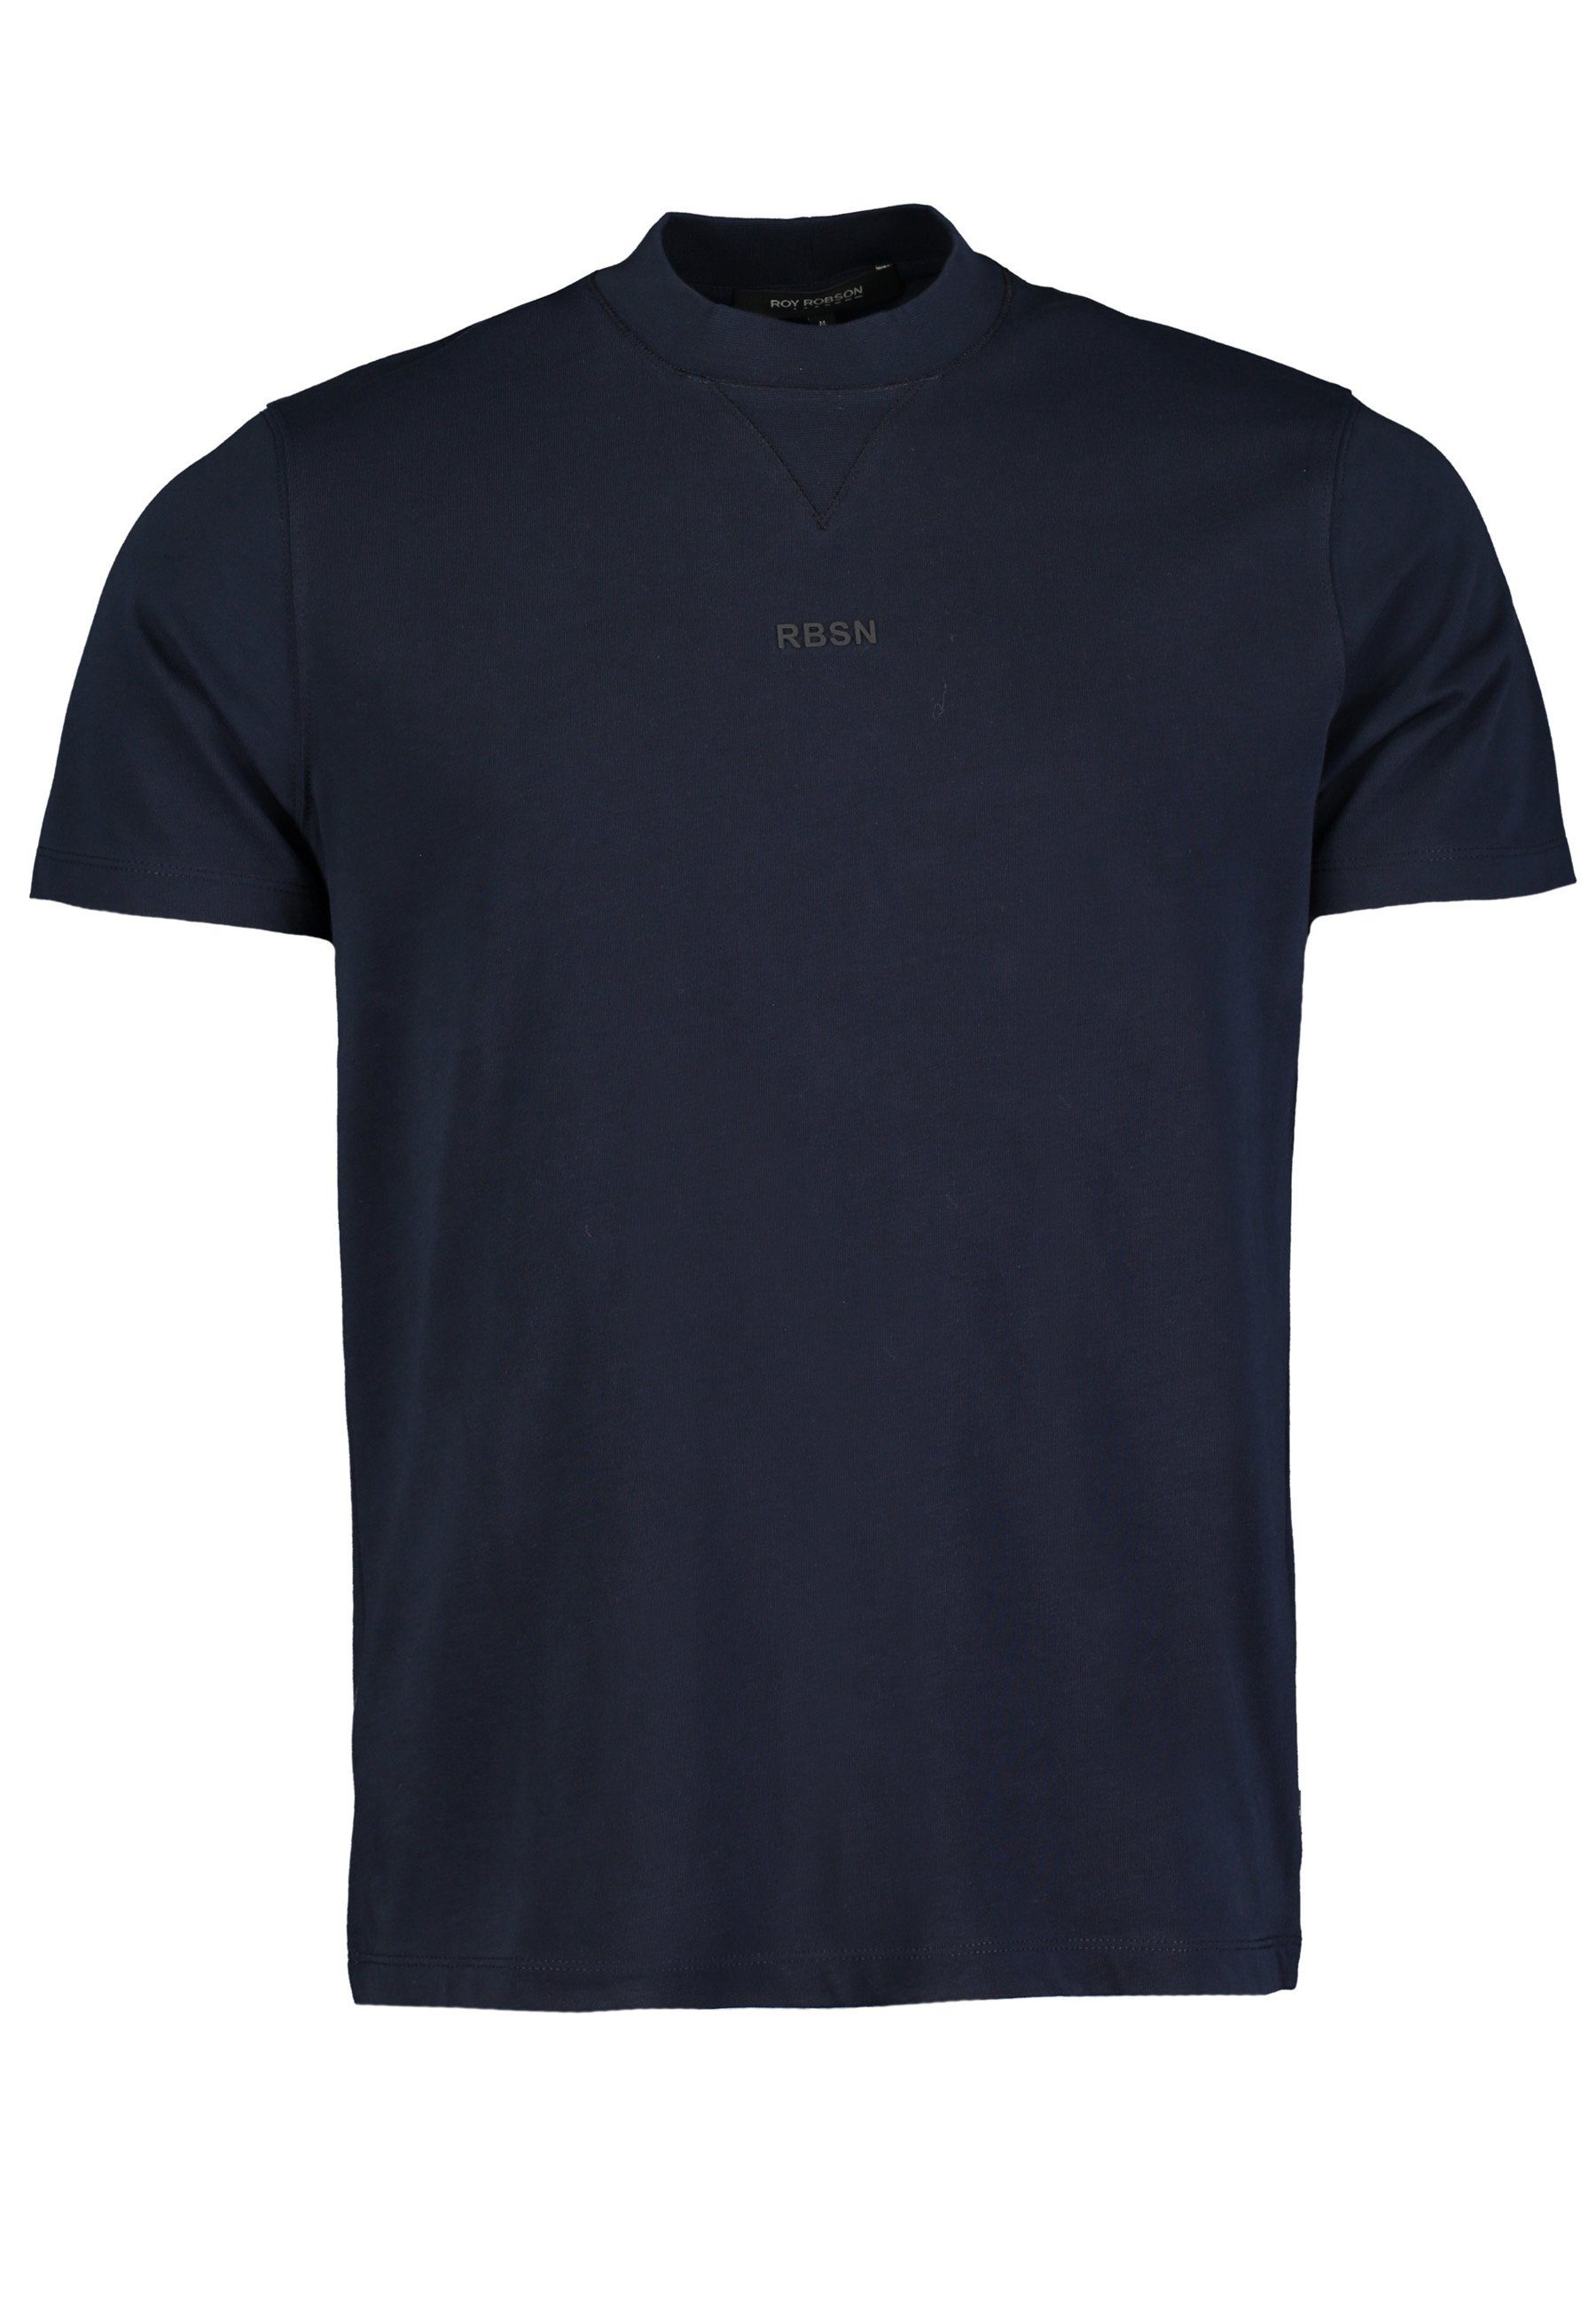 Roy Robson T-Shirt Rundhals T-Shirt dunkelblau mit